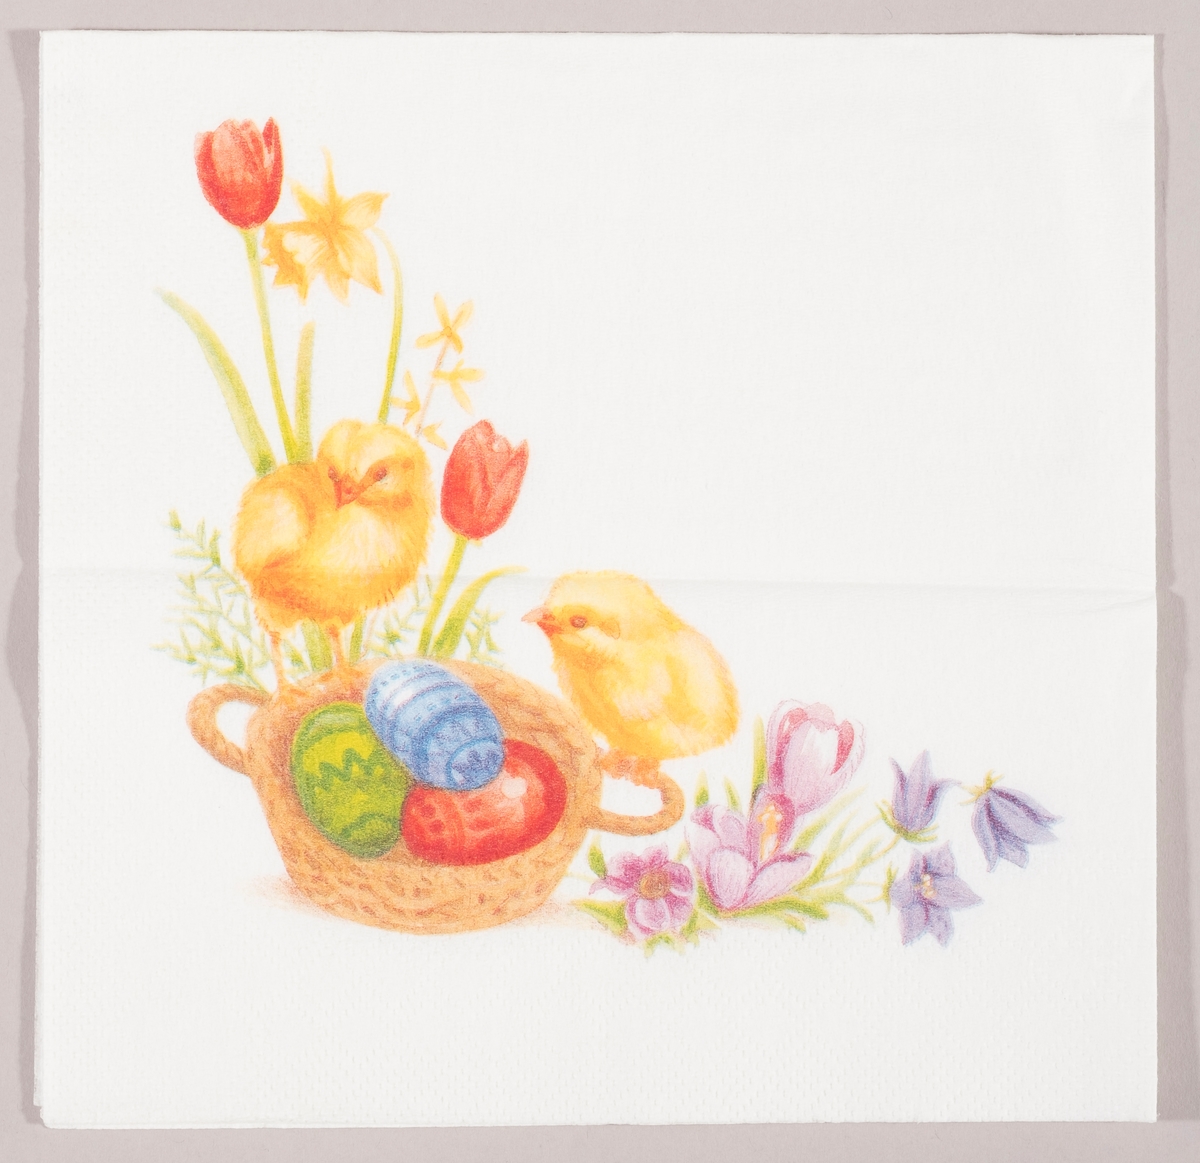 To kyllinger sitter på en flettet kurv med dekorerte påskeegg. Rundt om kurven er det tulipaner, påskeliljer, krokus og blåklokker.